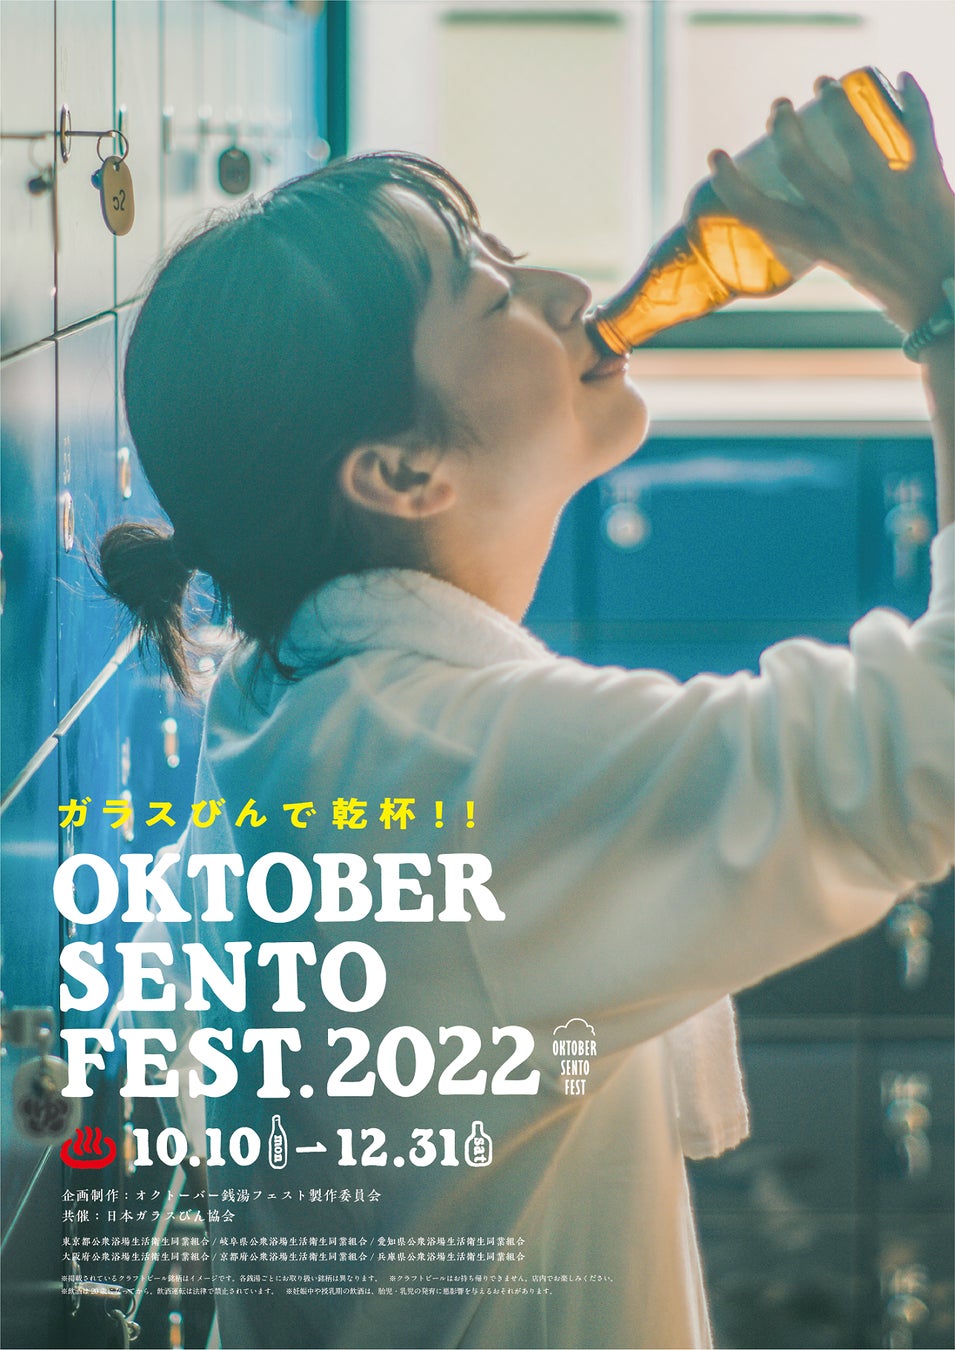 東京、岐阜、石川、愛知、京都、大阪、兵庫の銭湯にガラスびん入り国産クラフトビールが大集合！「OKTOBER SENTO FEST 2022」開催のサブ画像5